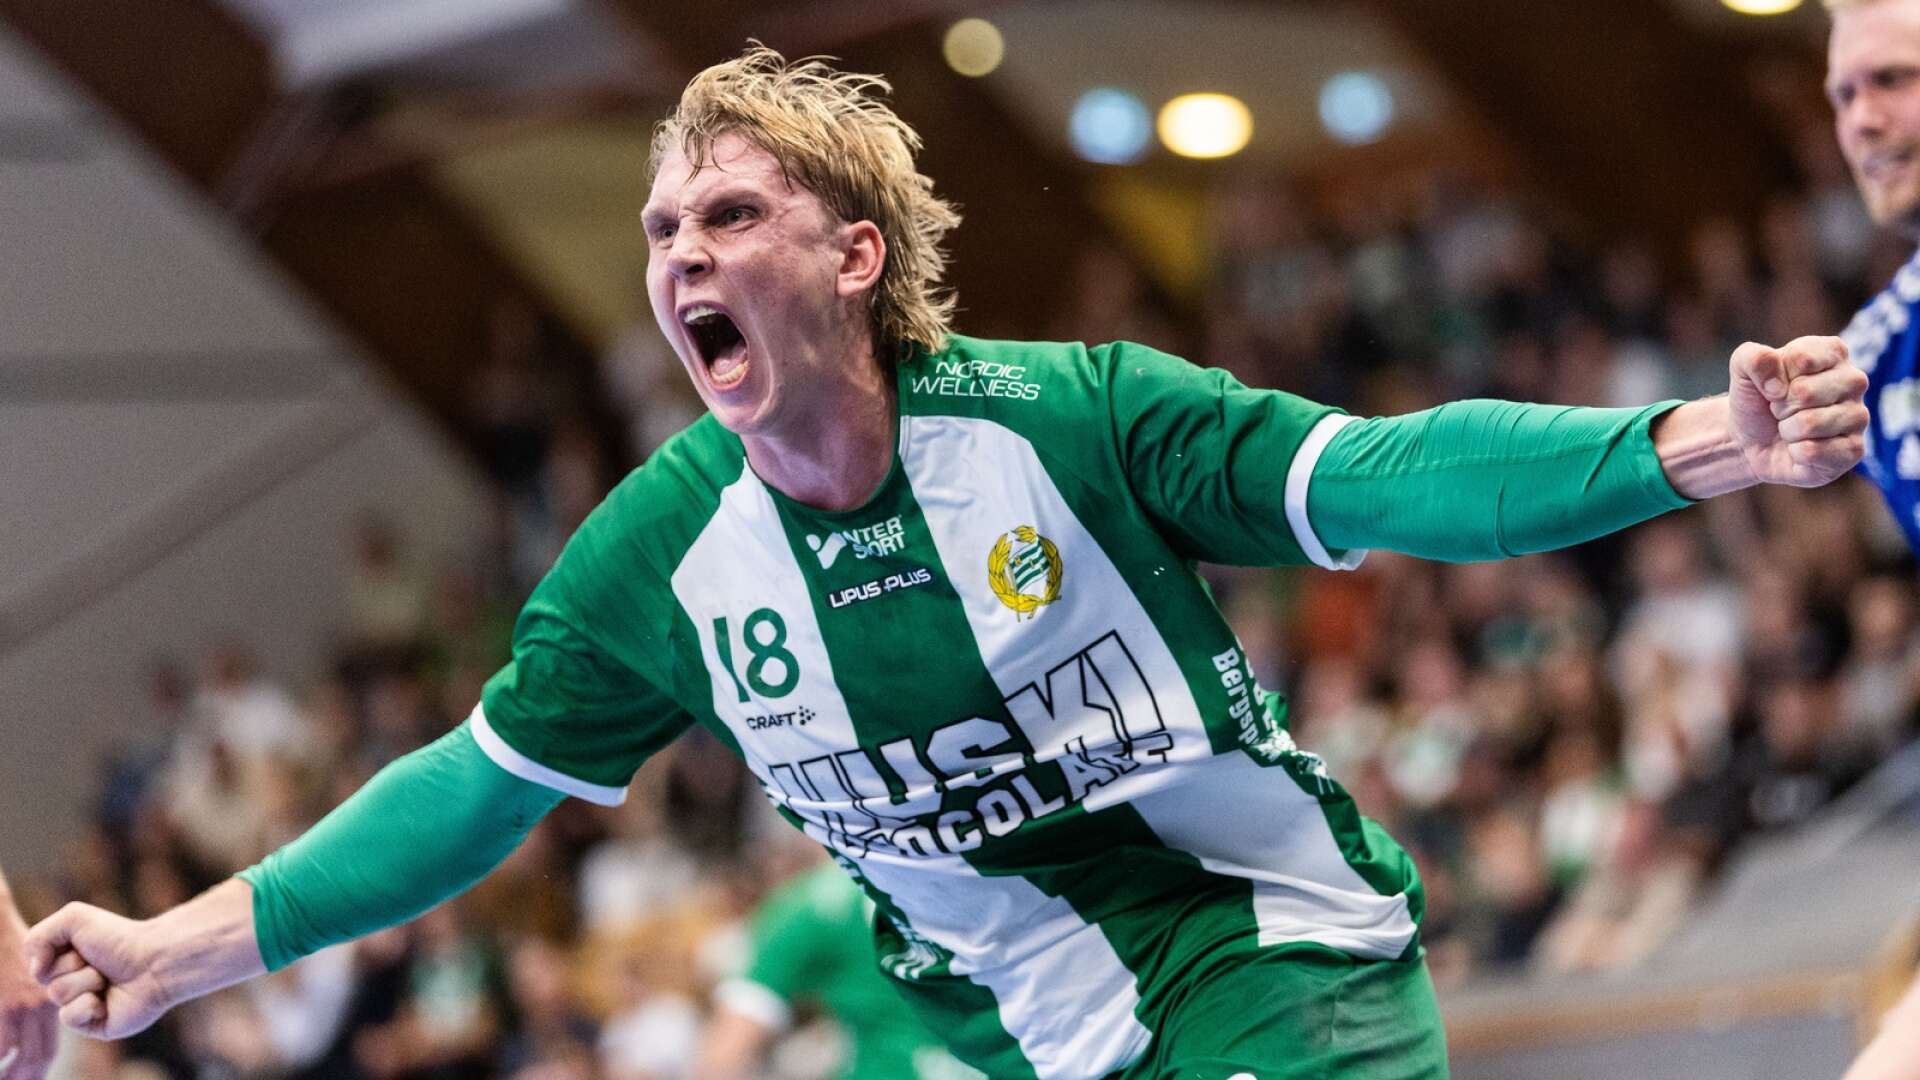 Edwin Aspenbäck lämnar Hammarby för spel i den danska ligan till nästa säsong.